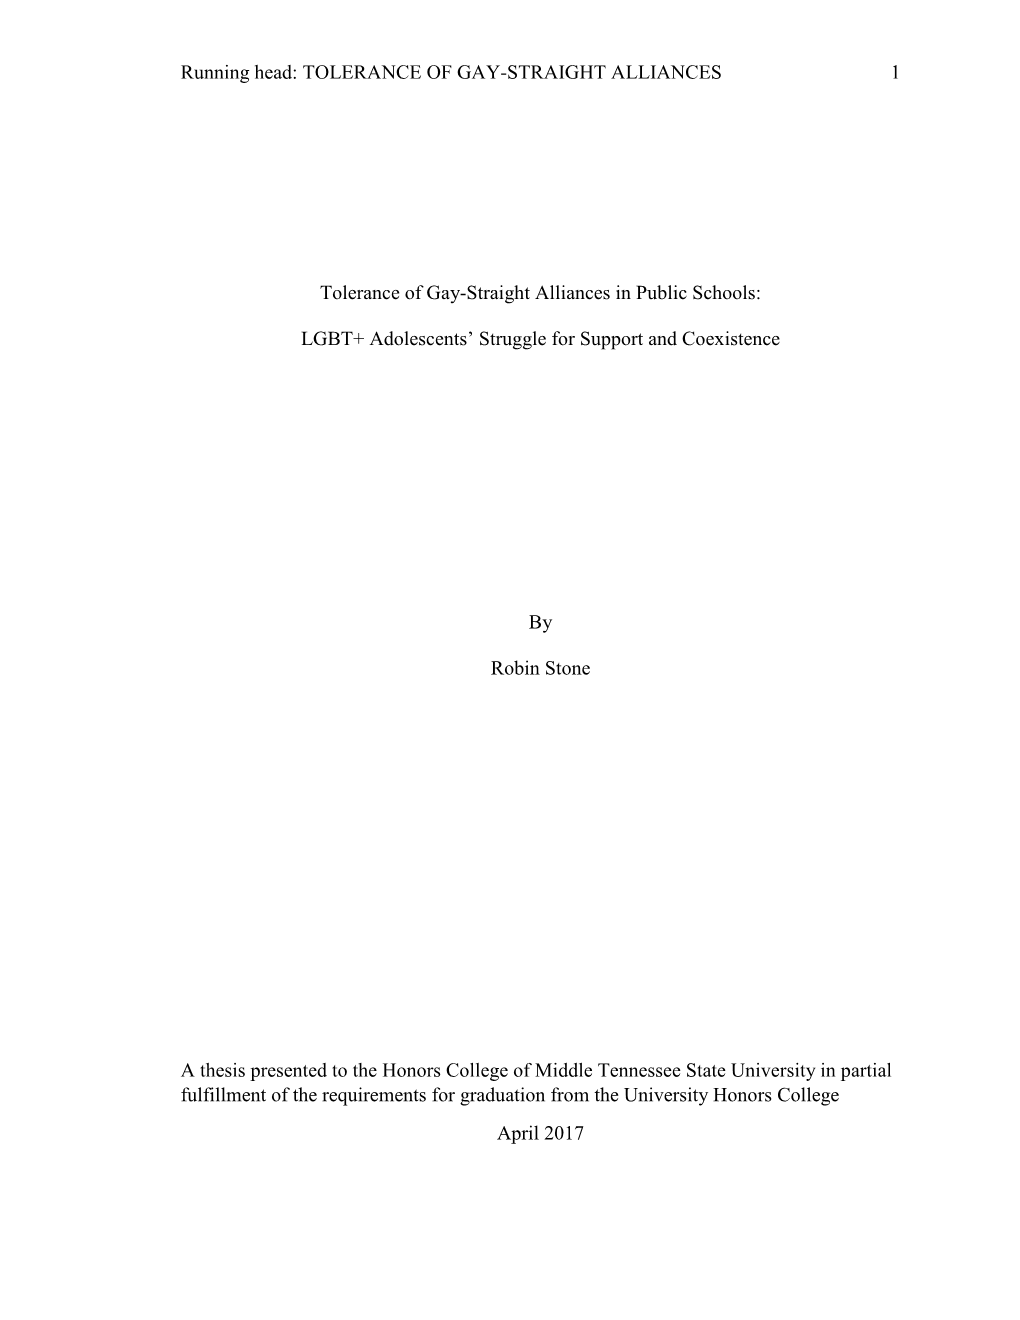 Running Head: TOLERANCE of GAY-STRAIGHT ALLIANCES 1 Tolerance of Gay-Straight Alliances in Public Schools: LGBT+ Adolescents'